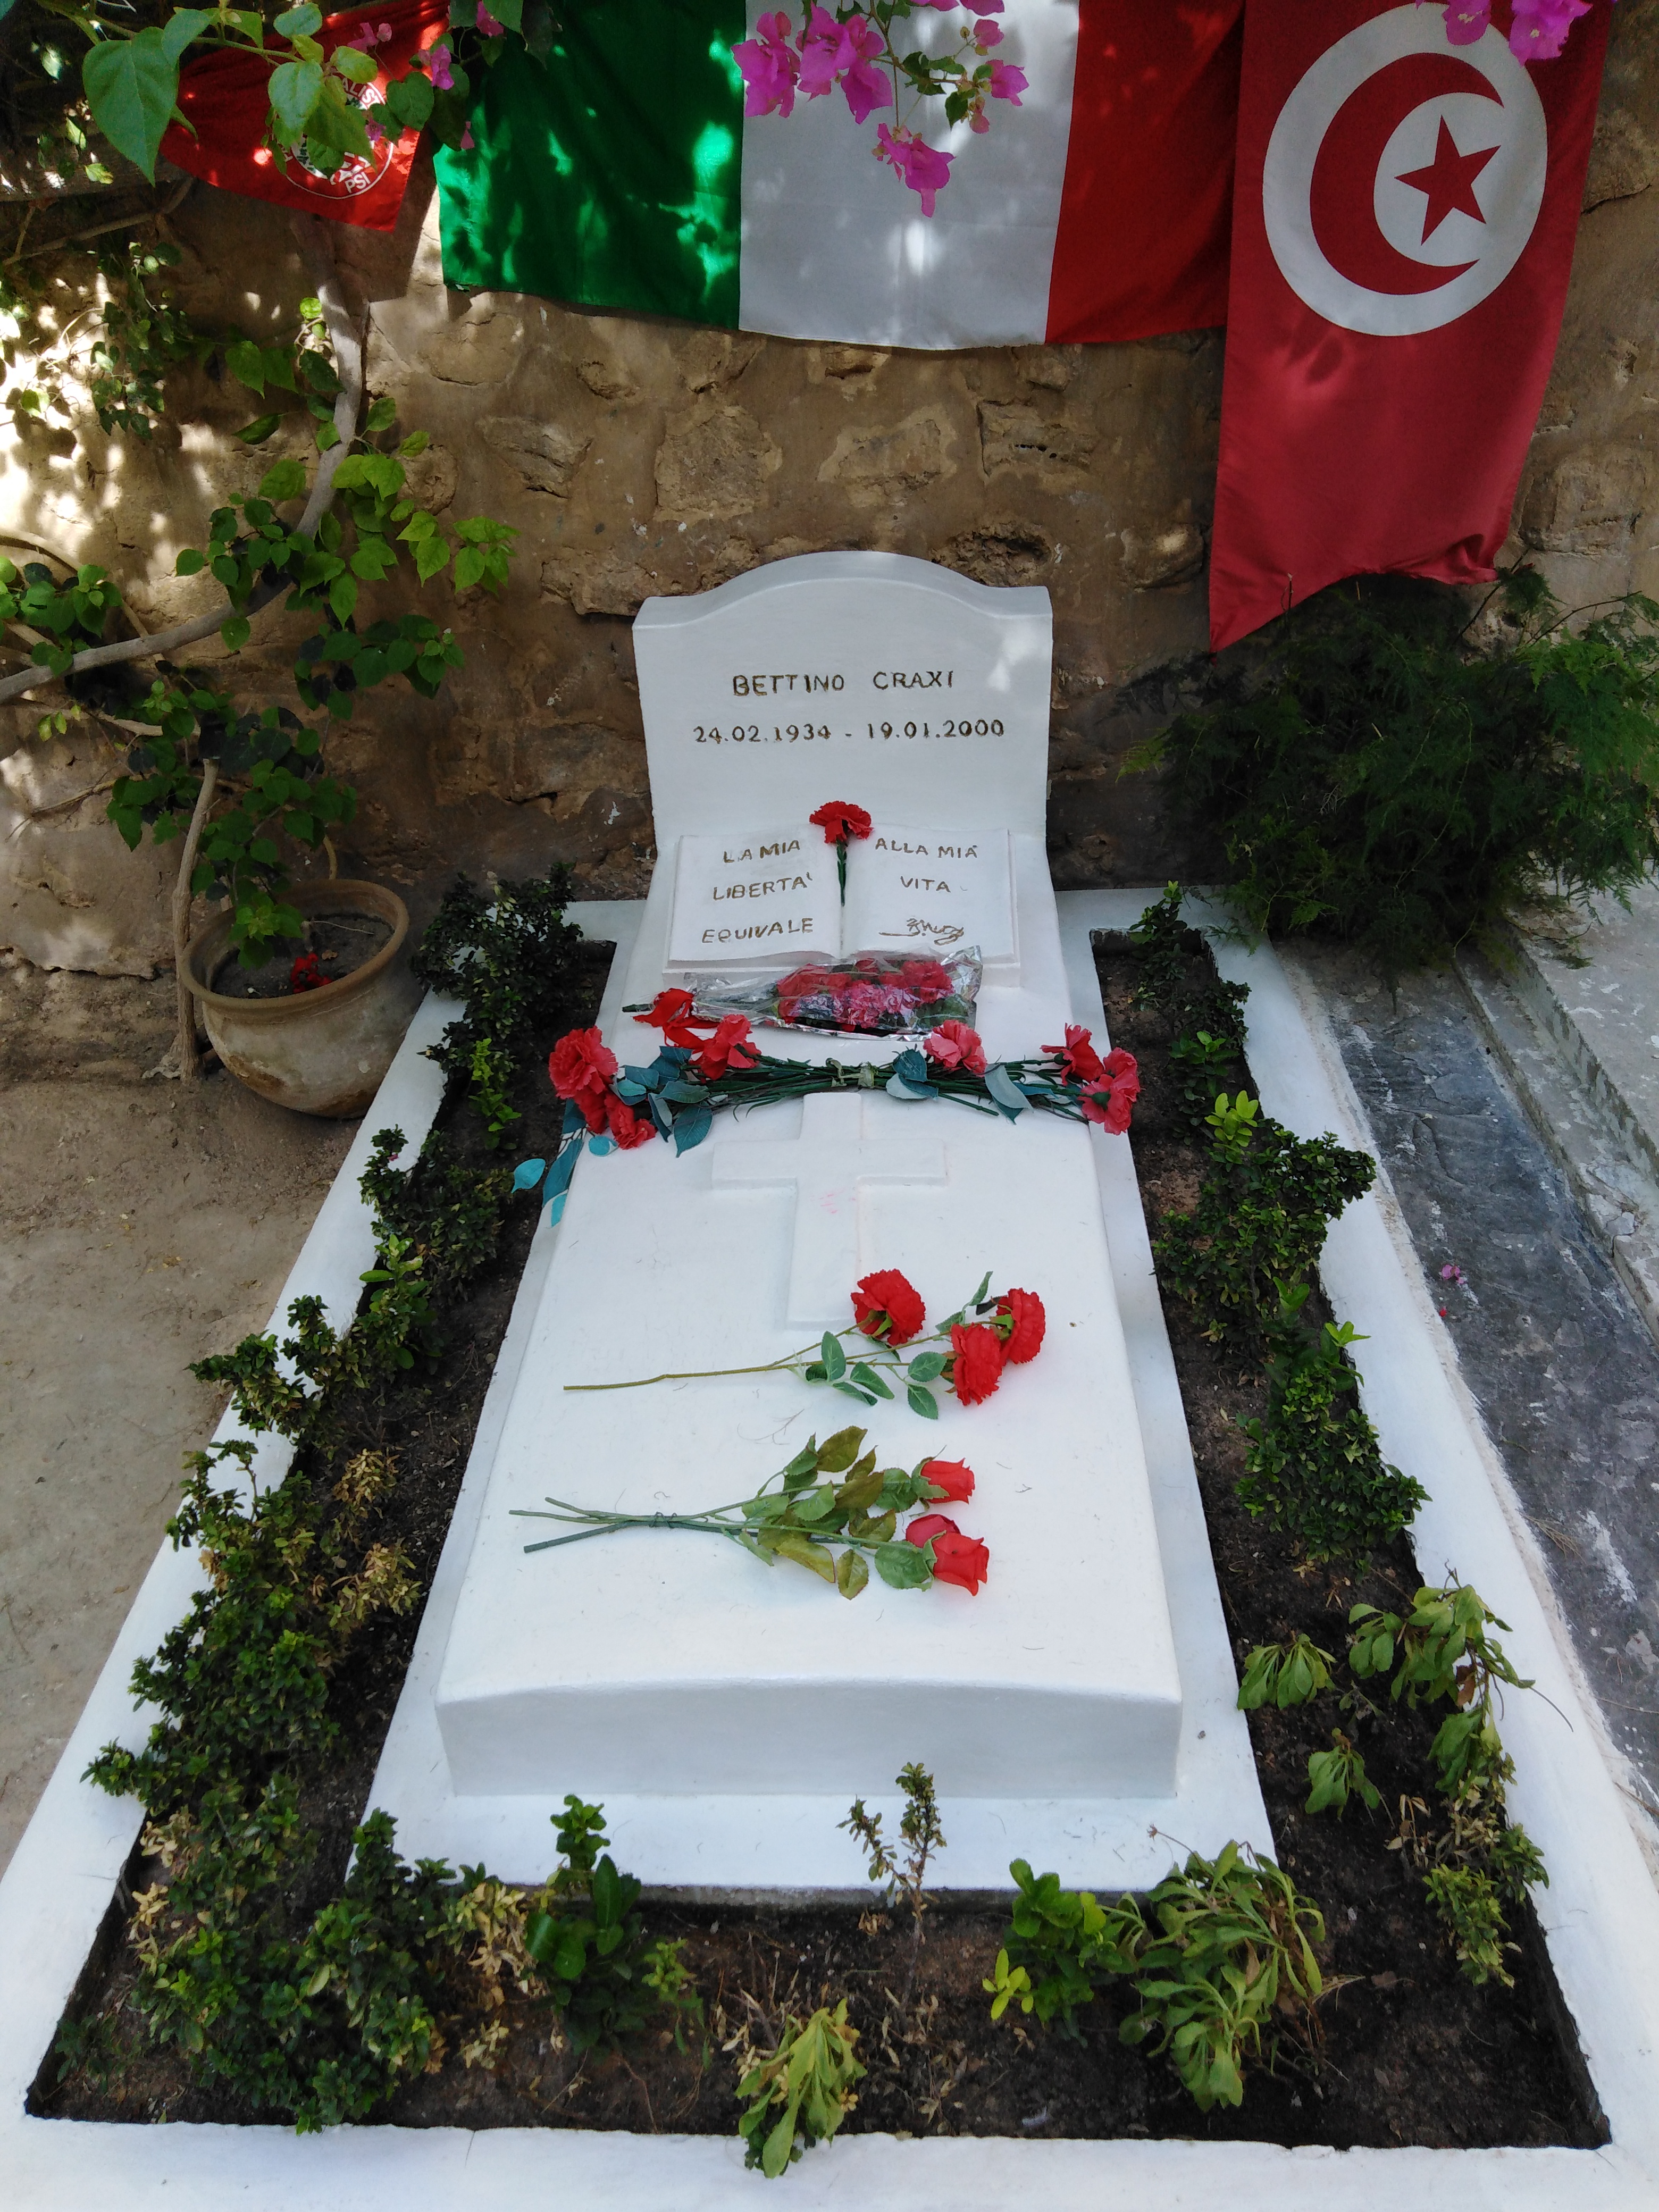 La politica tunisina secondo il custode della tomba di Craxi